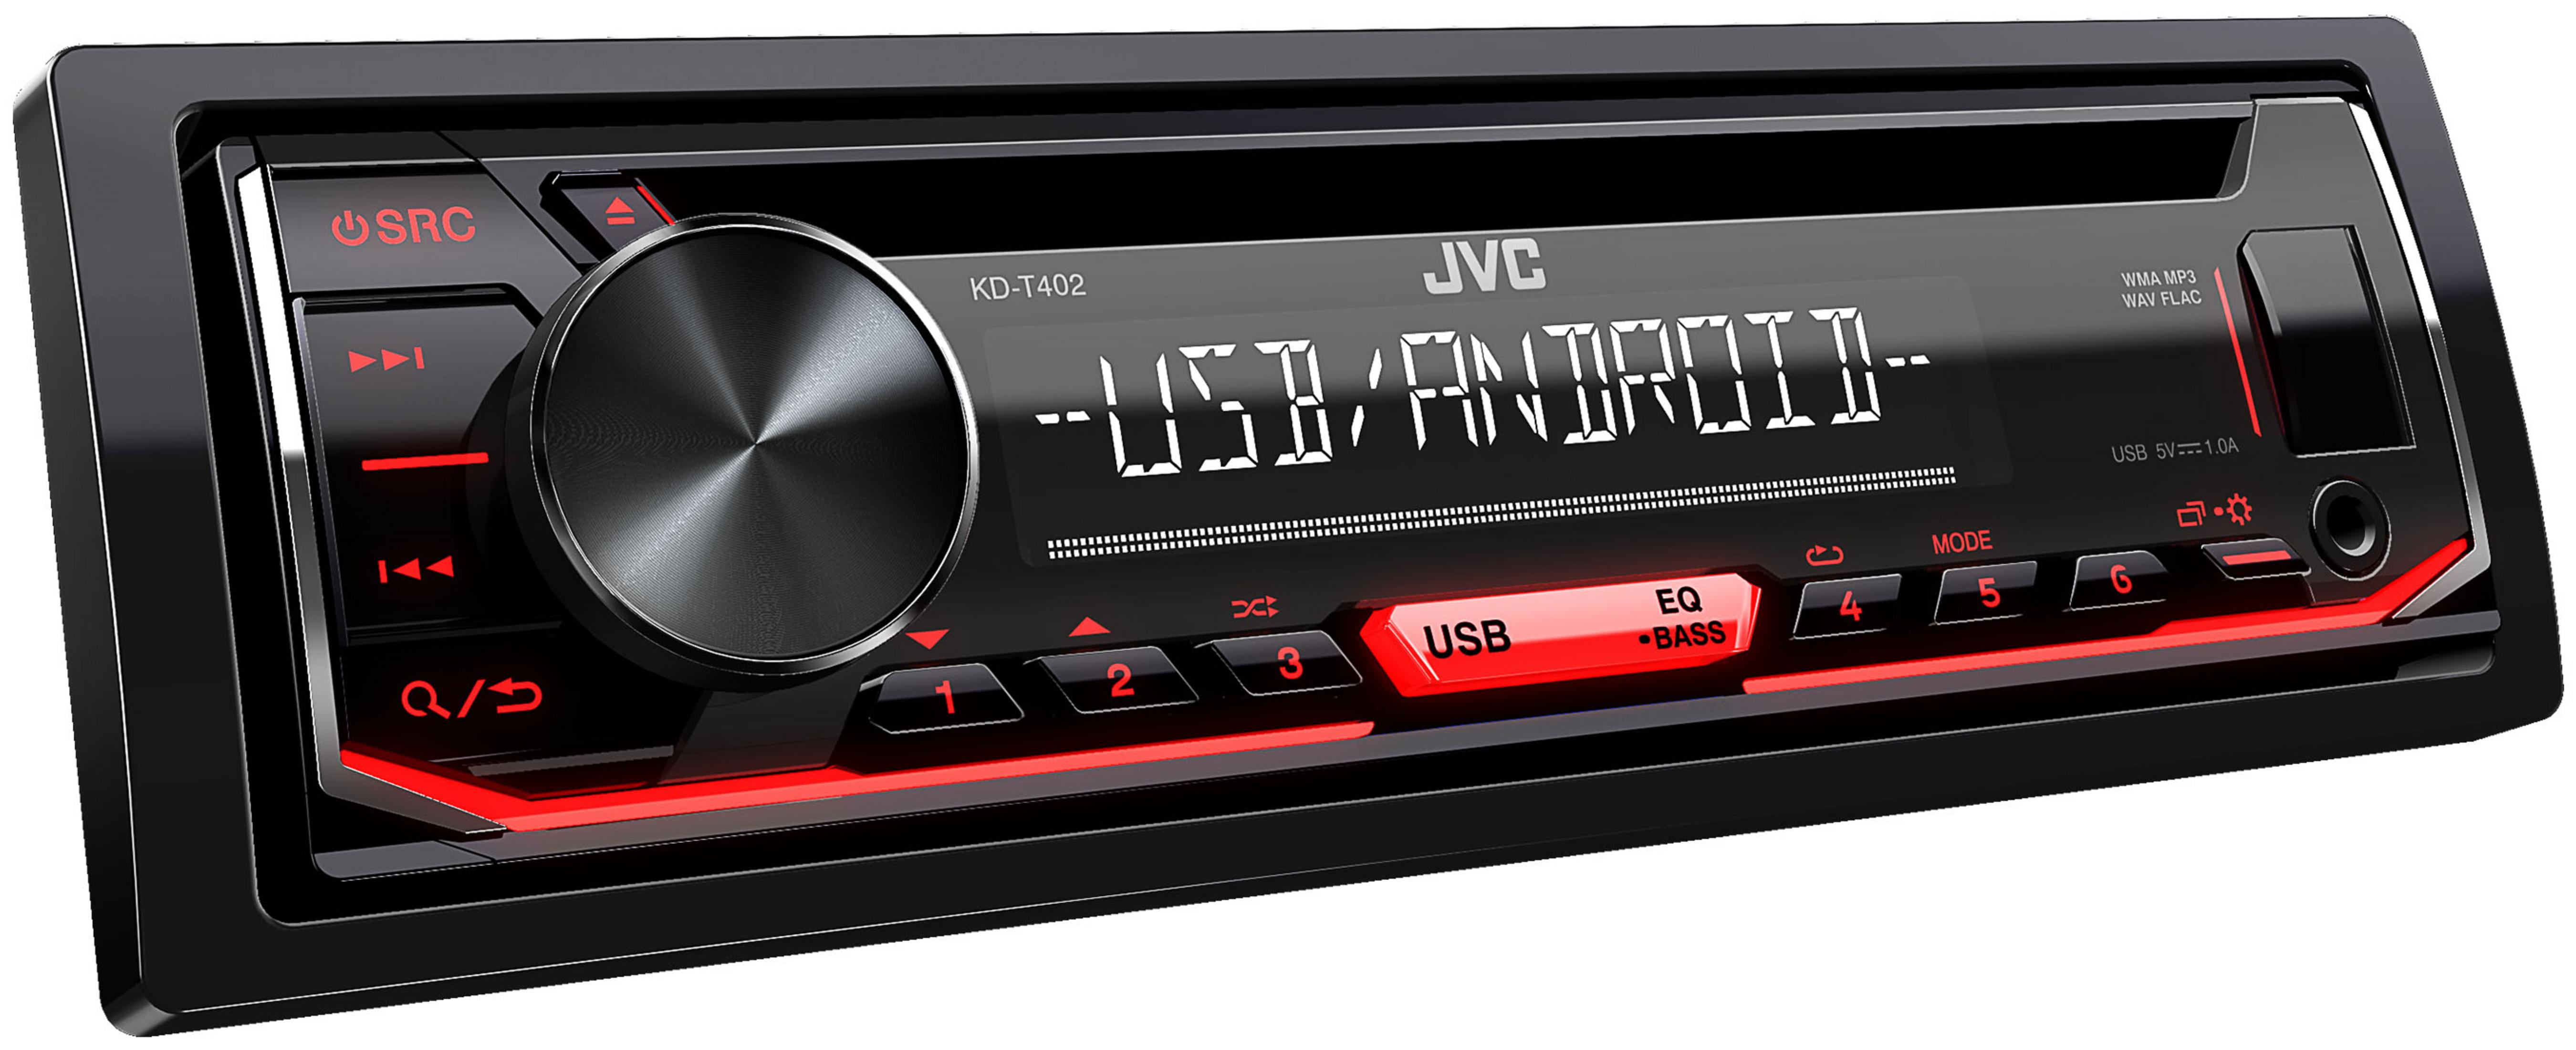 JVC 1 Autoradio Watt KDT 50 402 DIN,